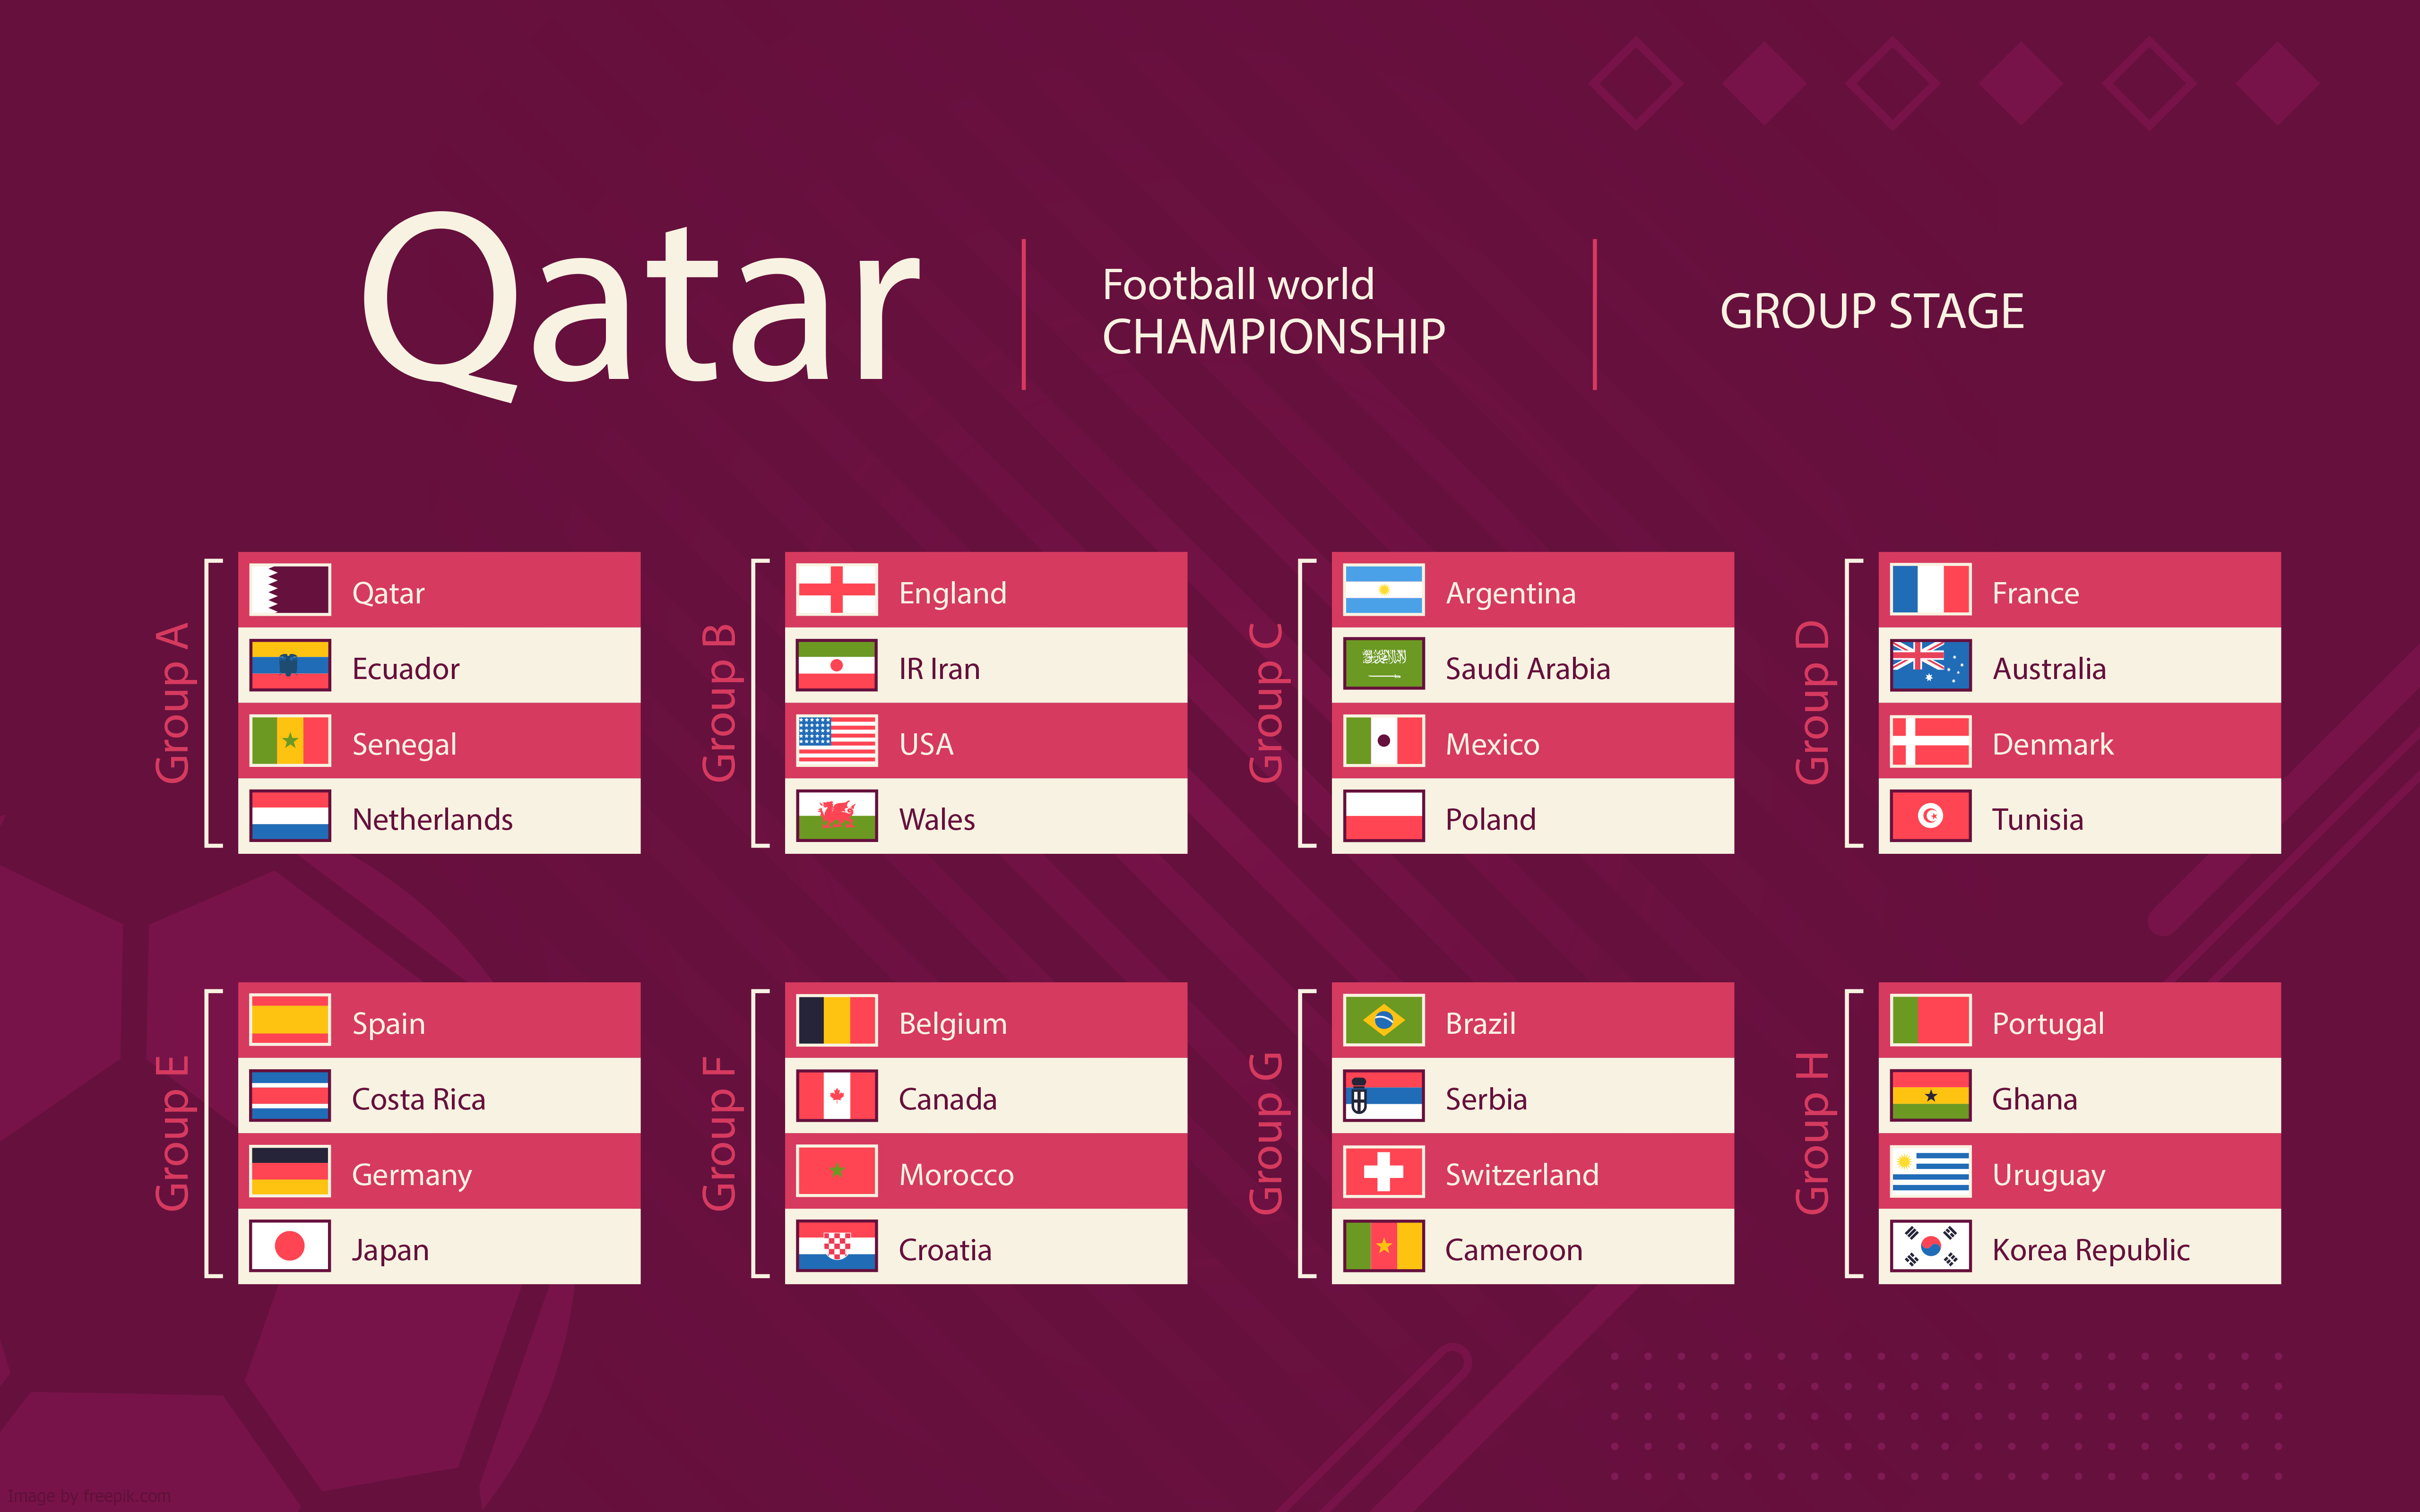 FIFA World Cup Qatar 2022 022 Mistrzostwa Swiata w Pilce Noznej Katar 2022, Grupy